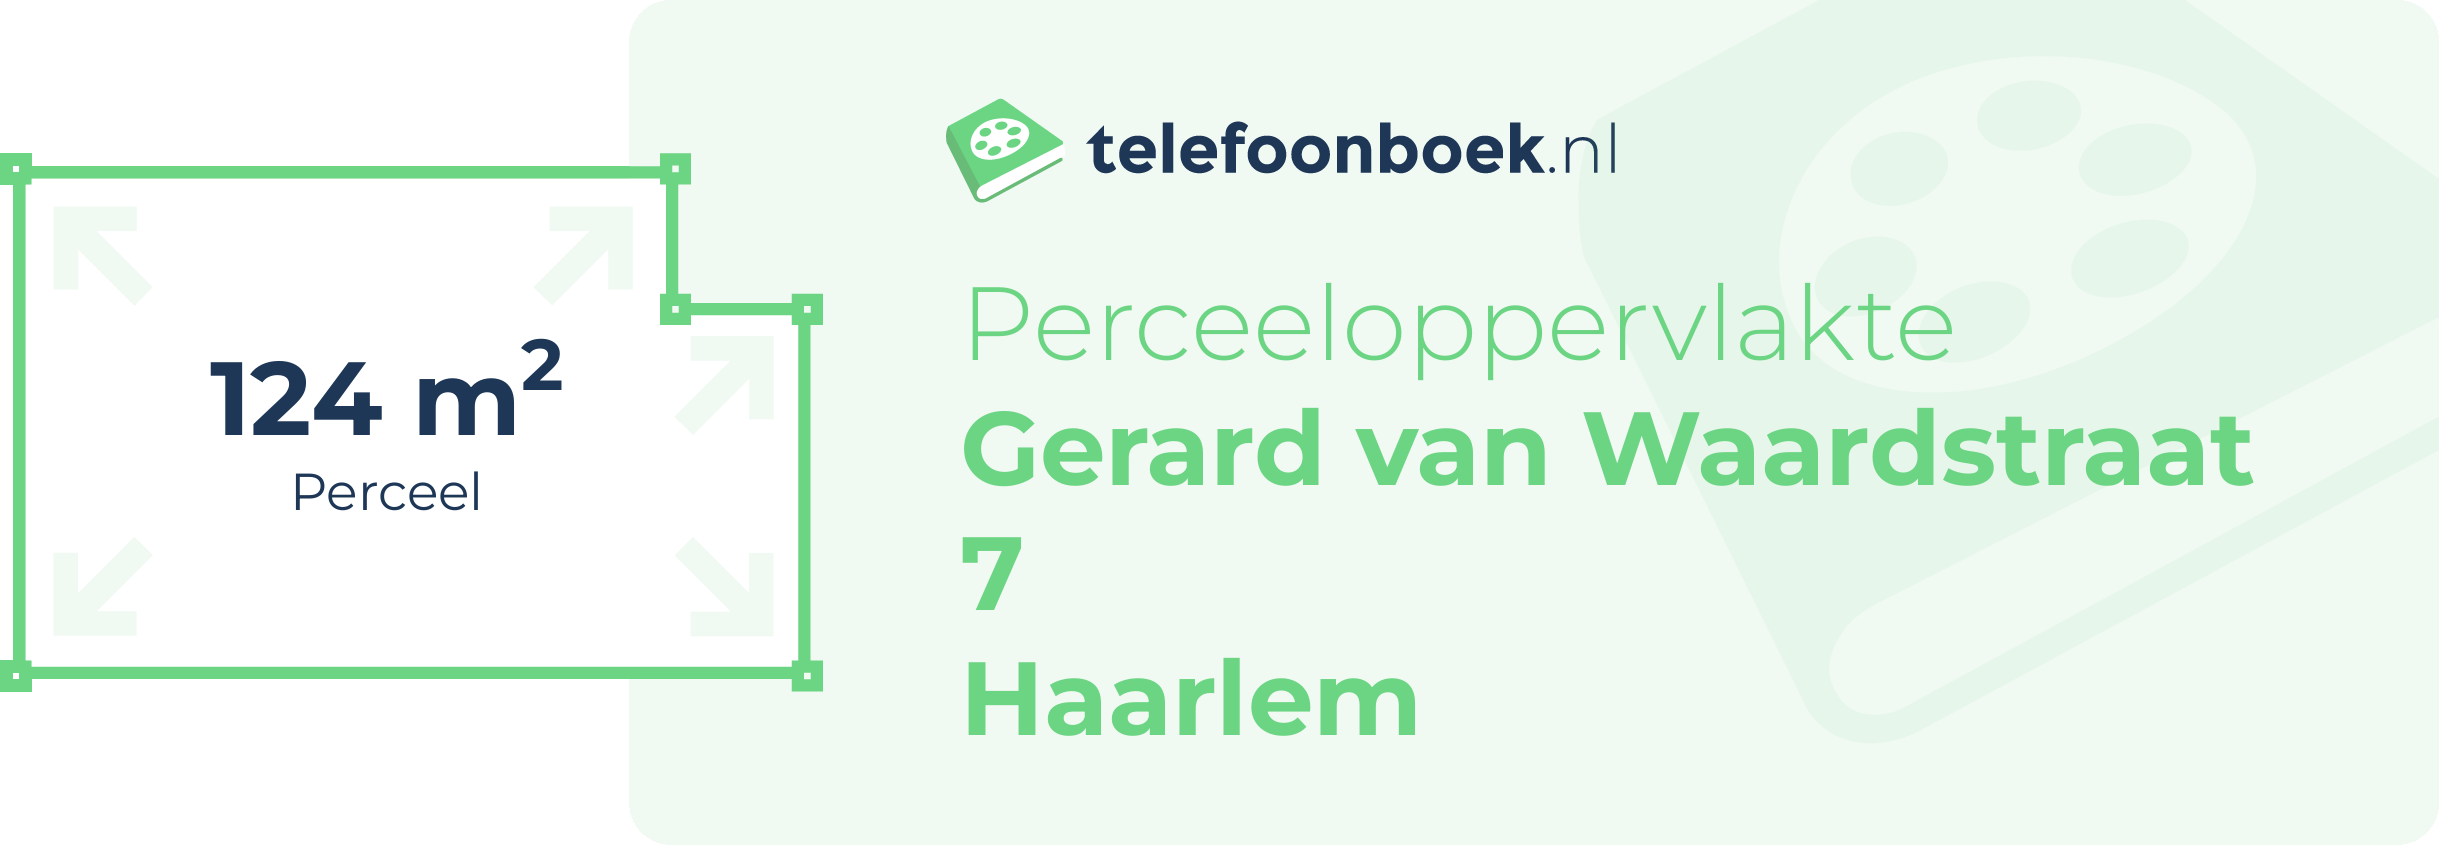 Perceeloppervlakte Gerard Van Waardstraat 7 Haarlem